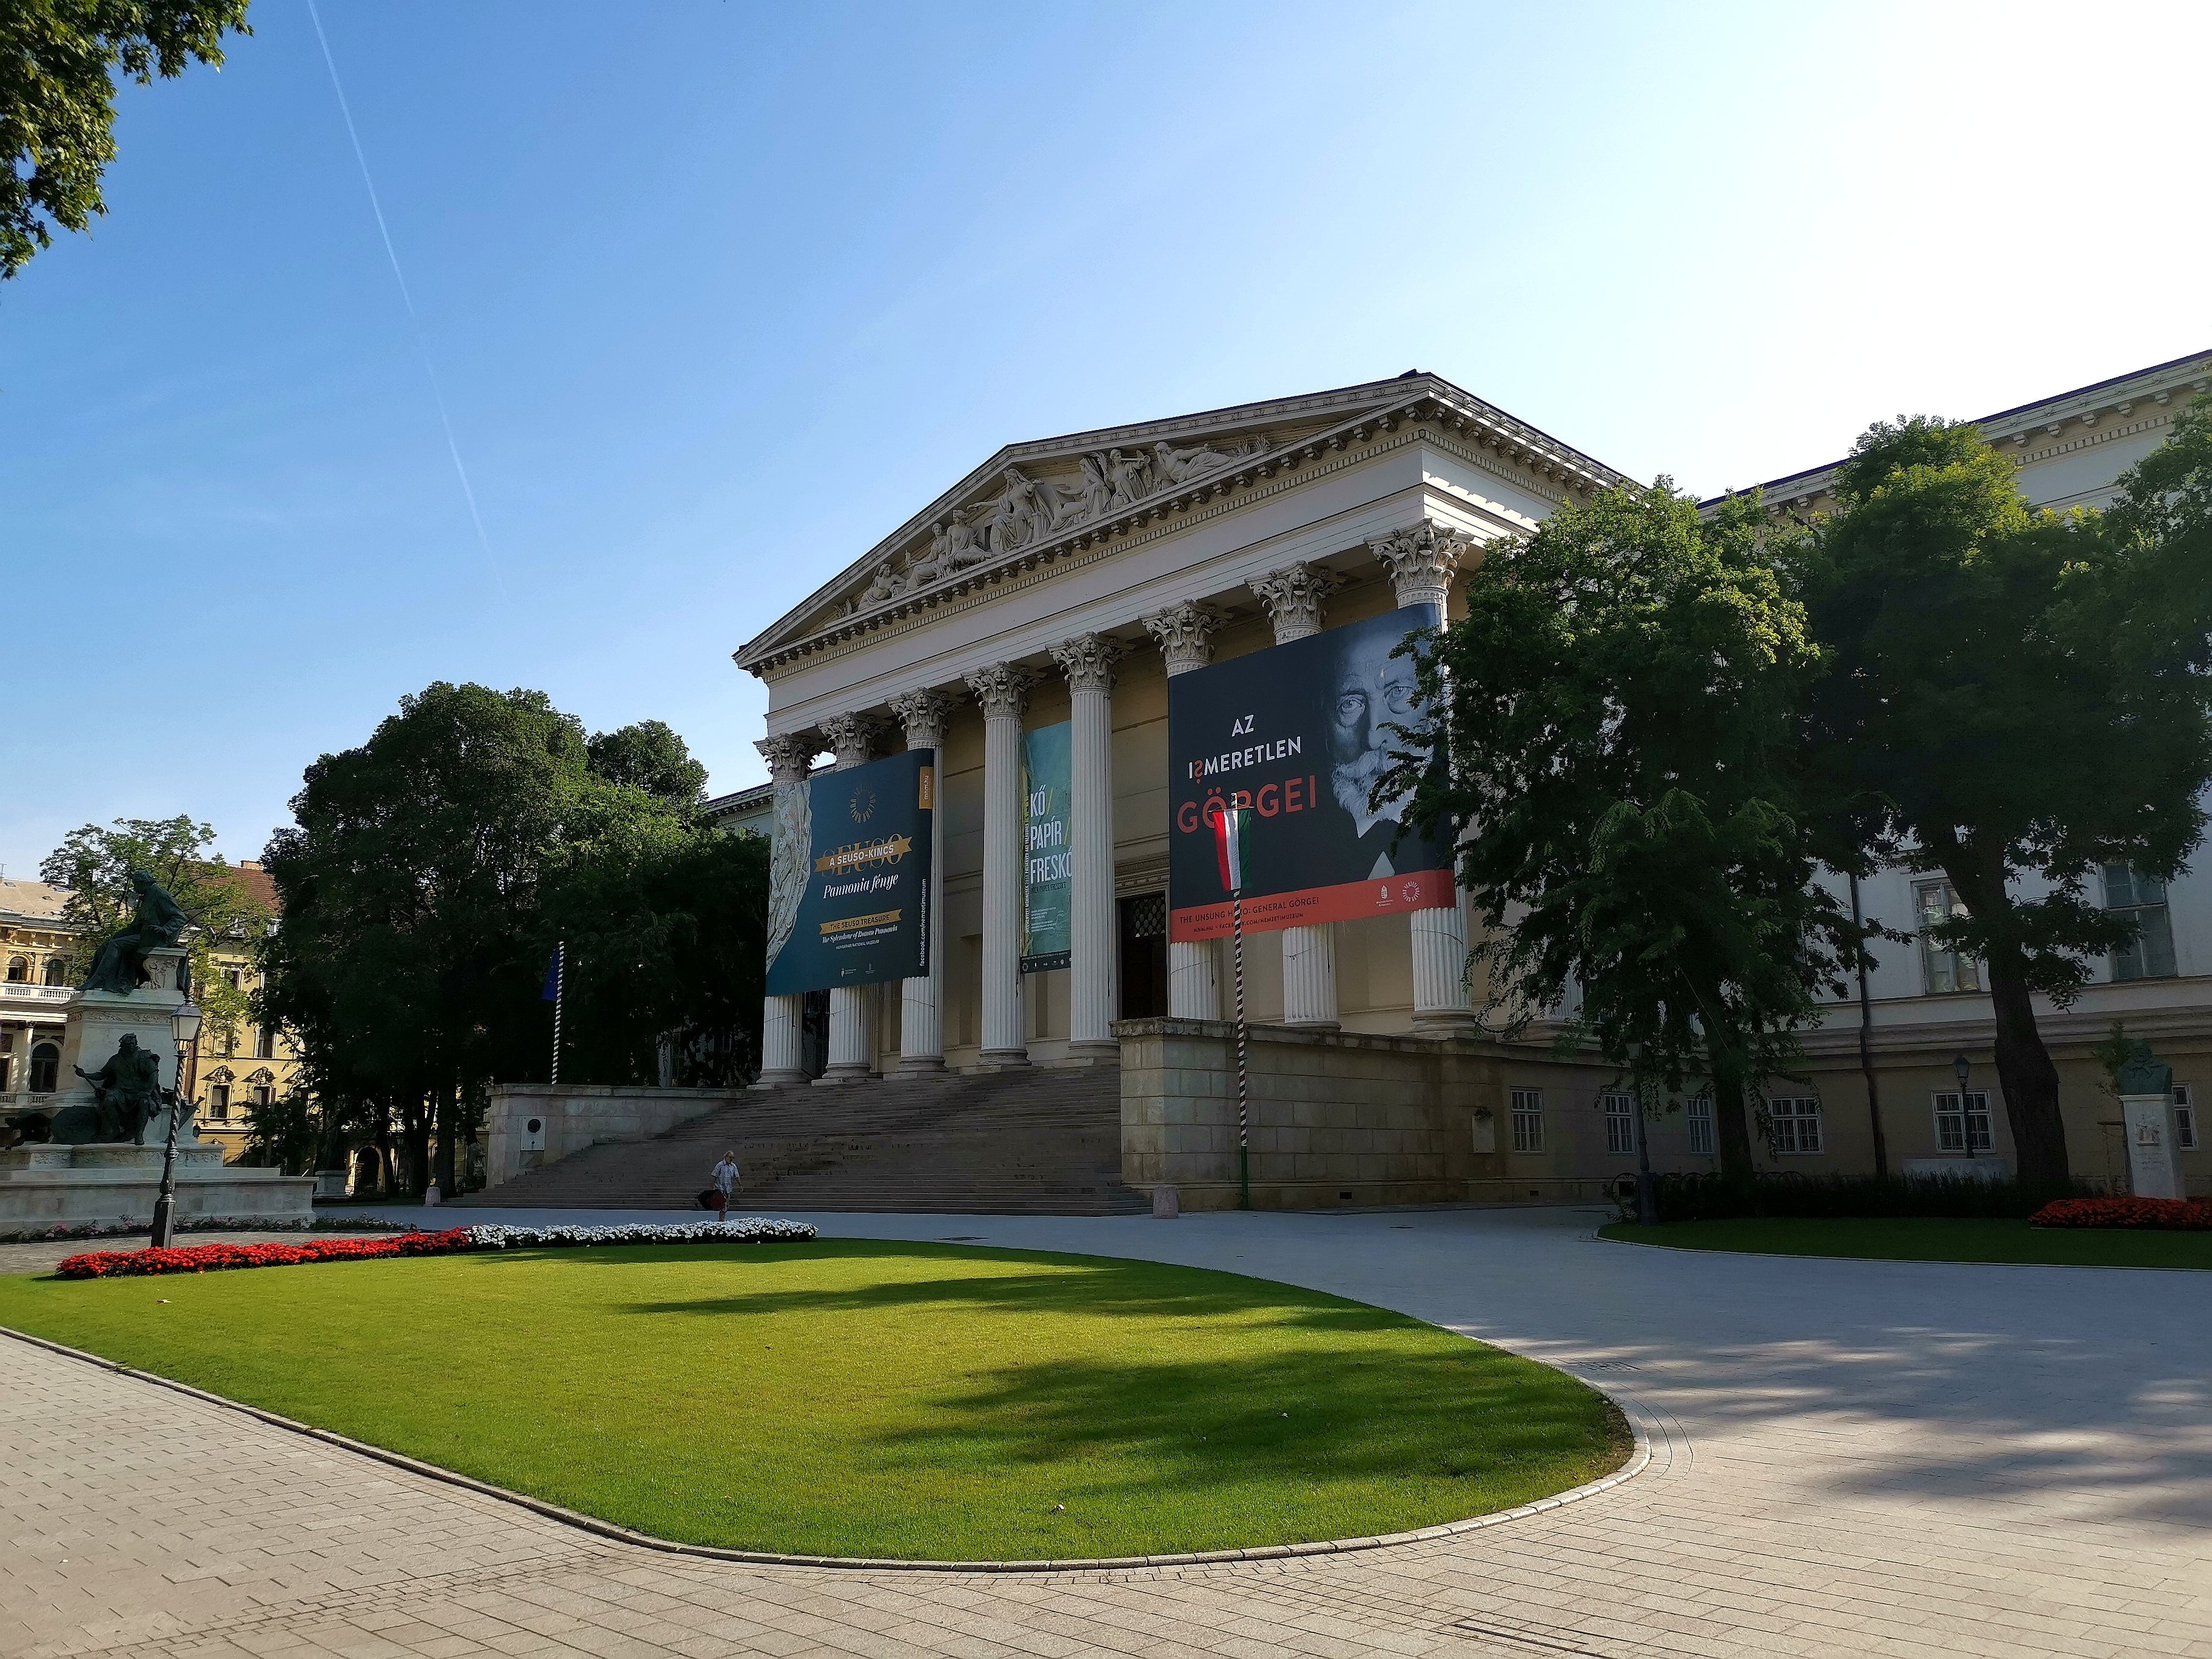 匈牙利国家博物馆